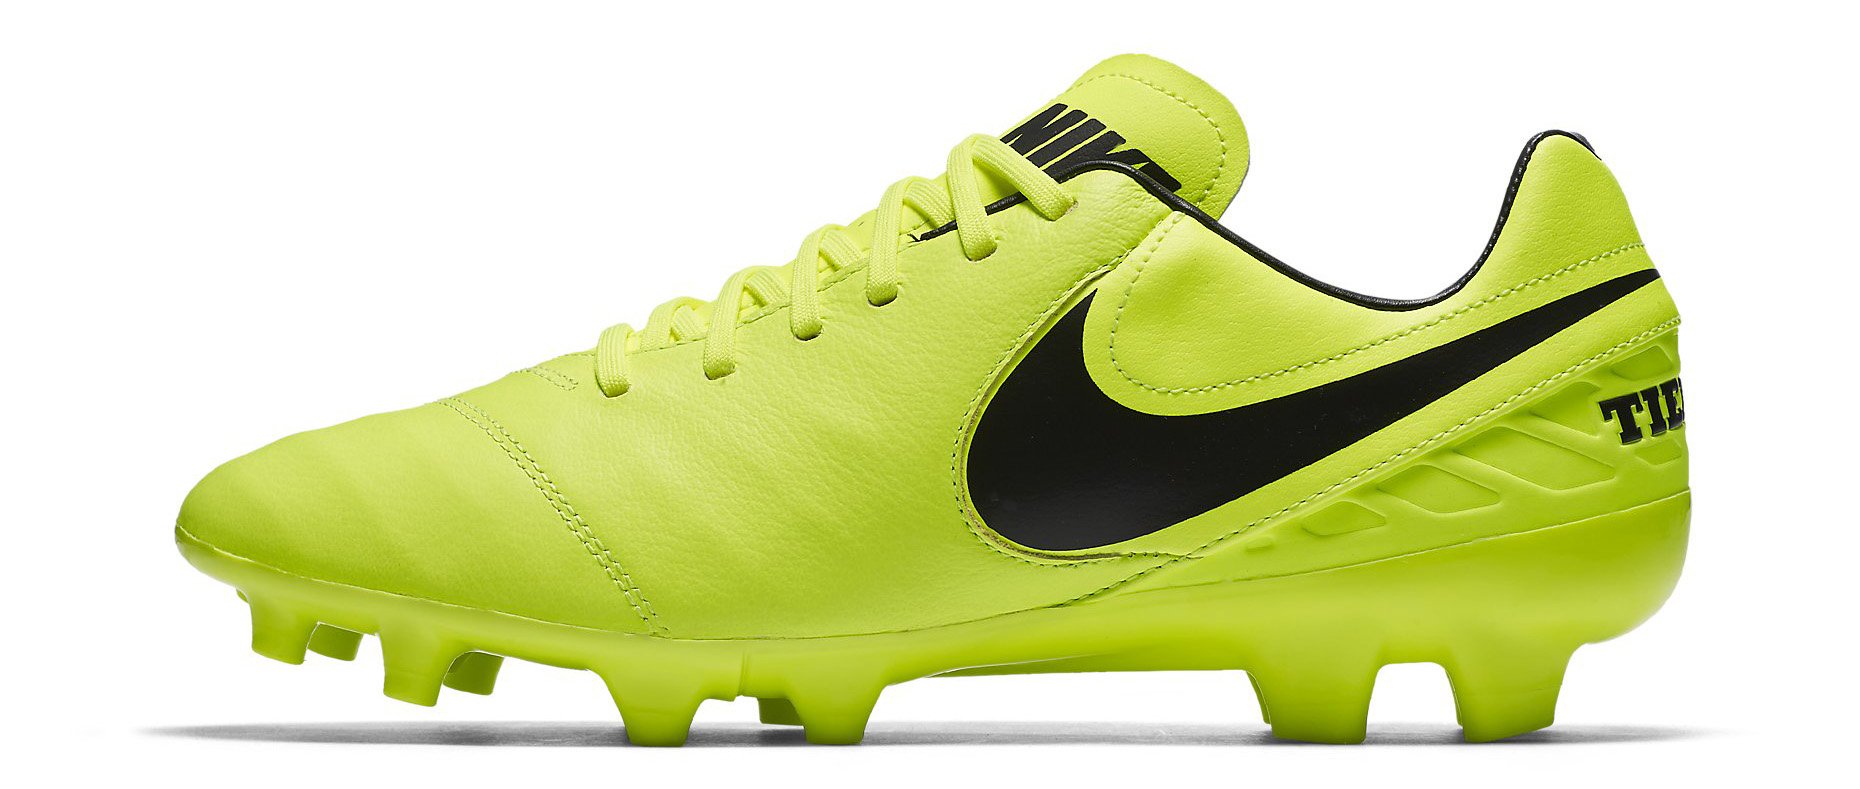 Pagar tributo semiconductor Reino Football shoes Nike TIEMPO MYSTIC V FG - Top4Football.com